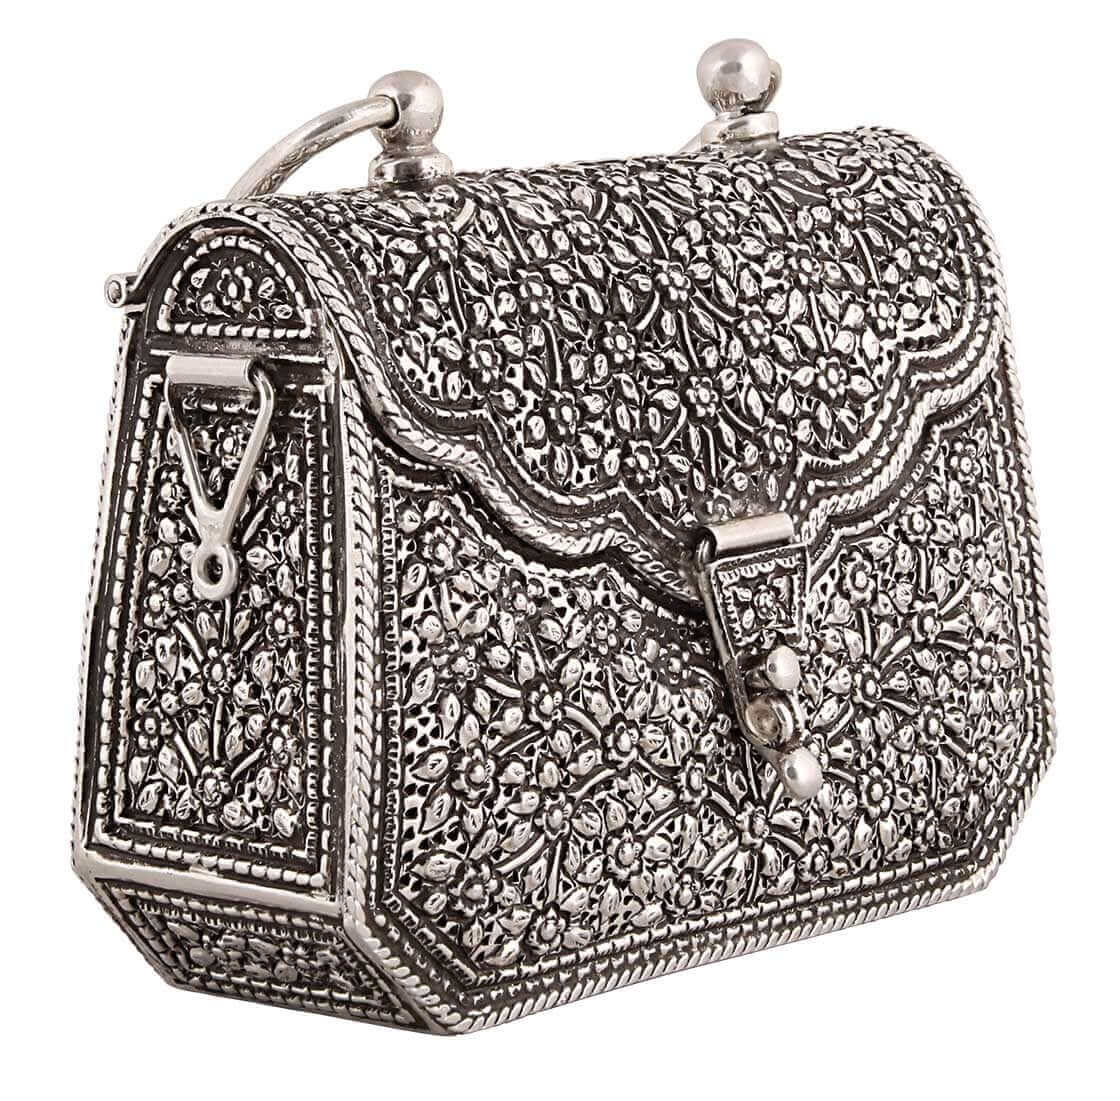 Buy Vintage Solid Silver Handbag Online in India - Etsy